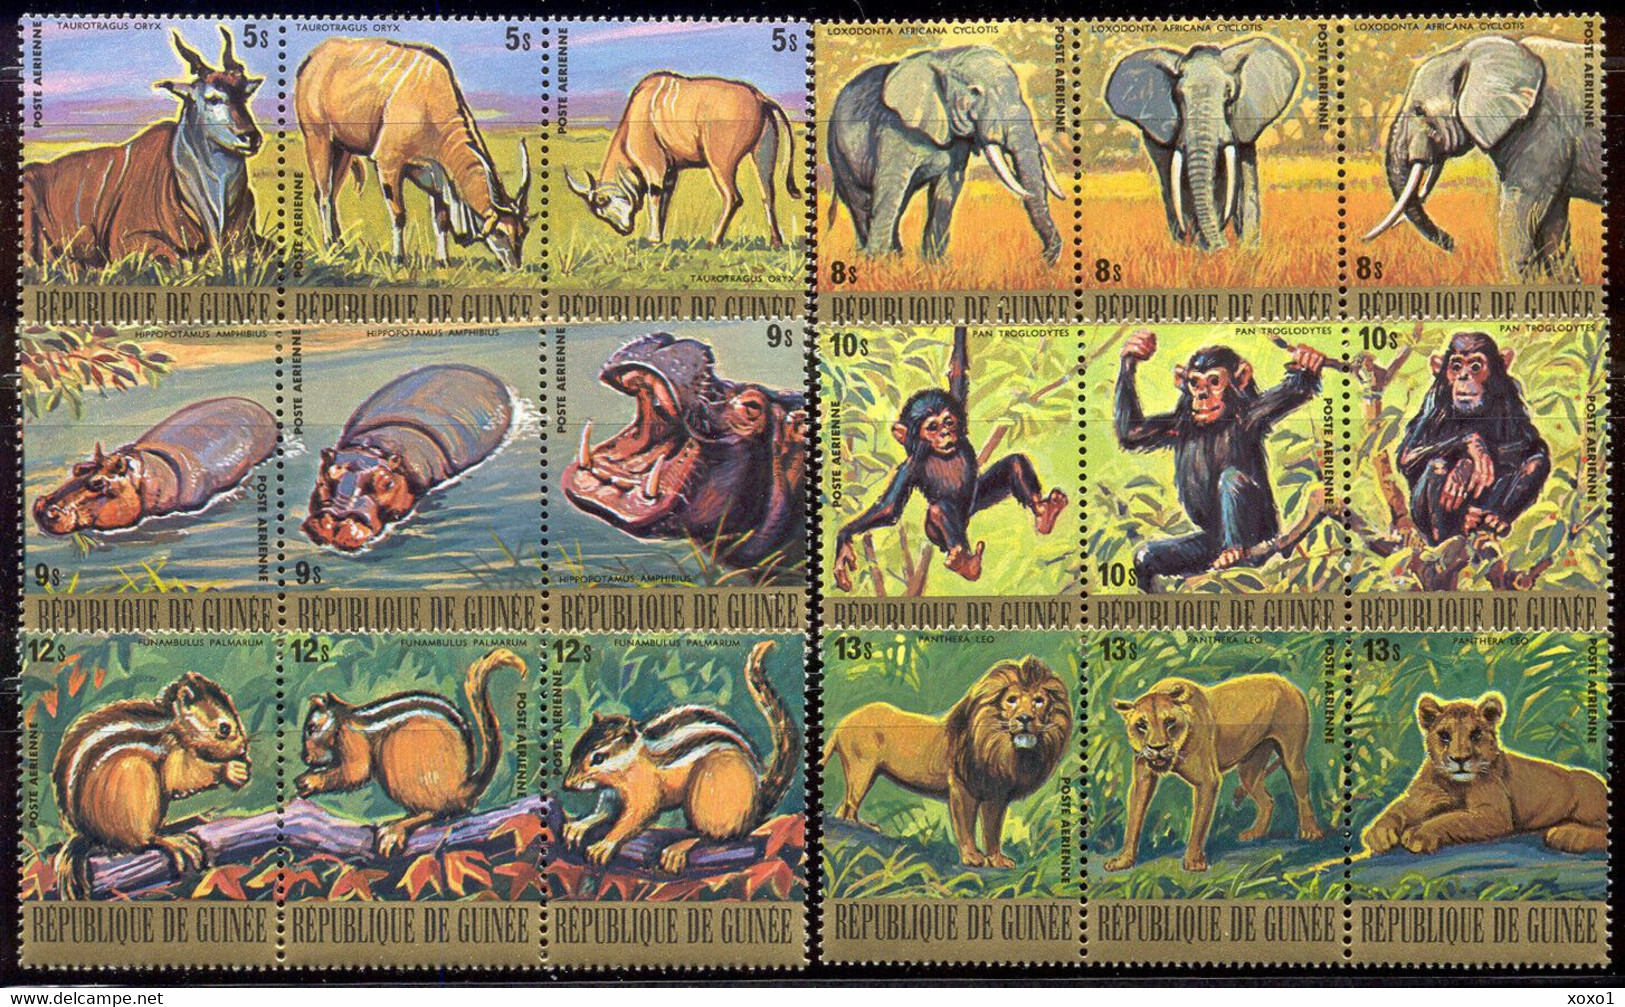 Guinea 1977 Mi.No. 811 - 828  Animals Chimpanzees Lion Hippo Squirrel Eland Elephant 18v MNH**   39.60 € - Chimpanzees